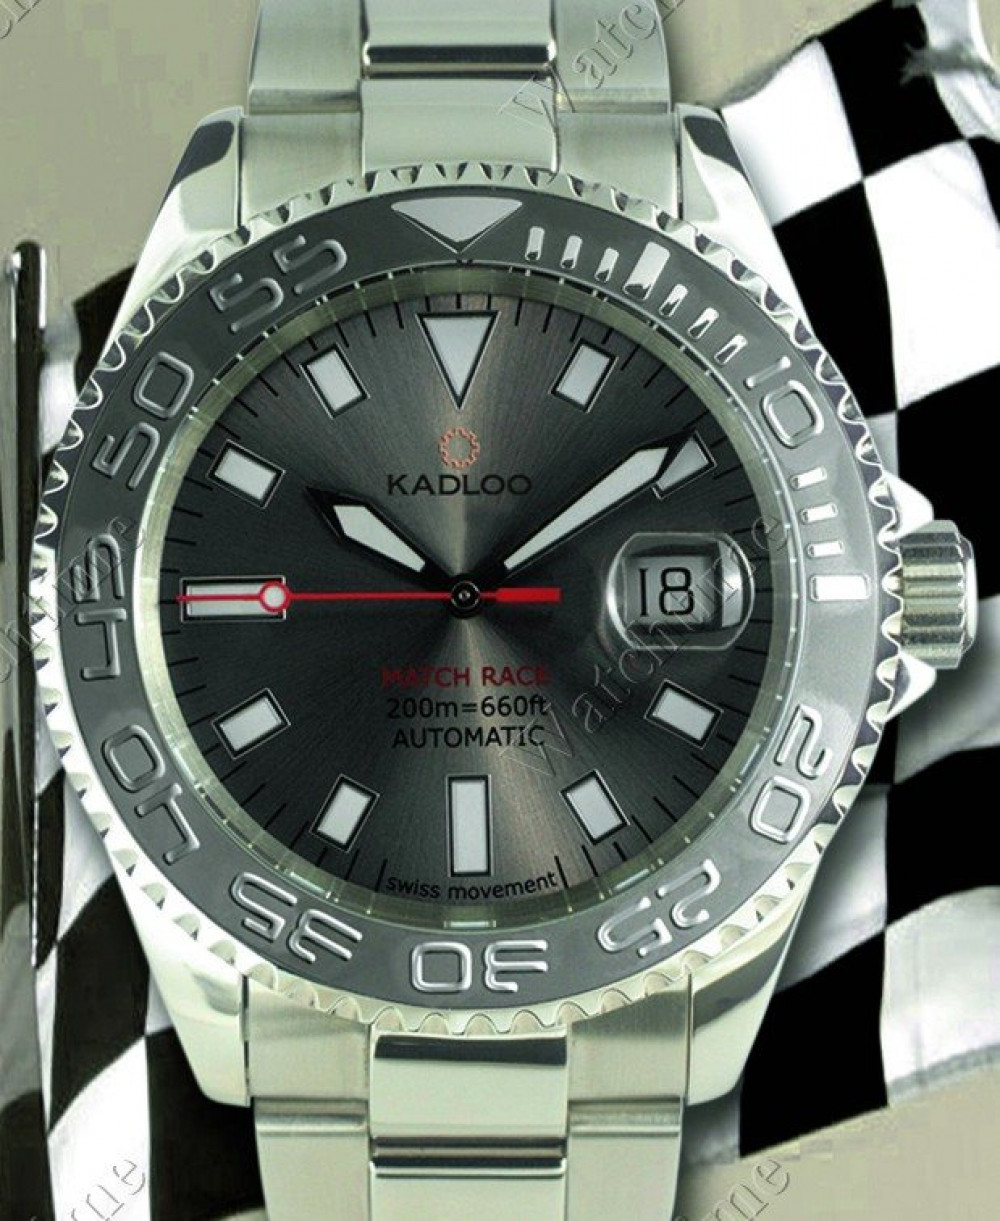 Zegarek firmy Kadloo, model Match Race